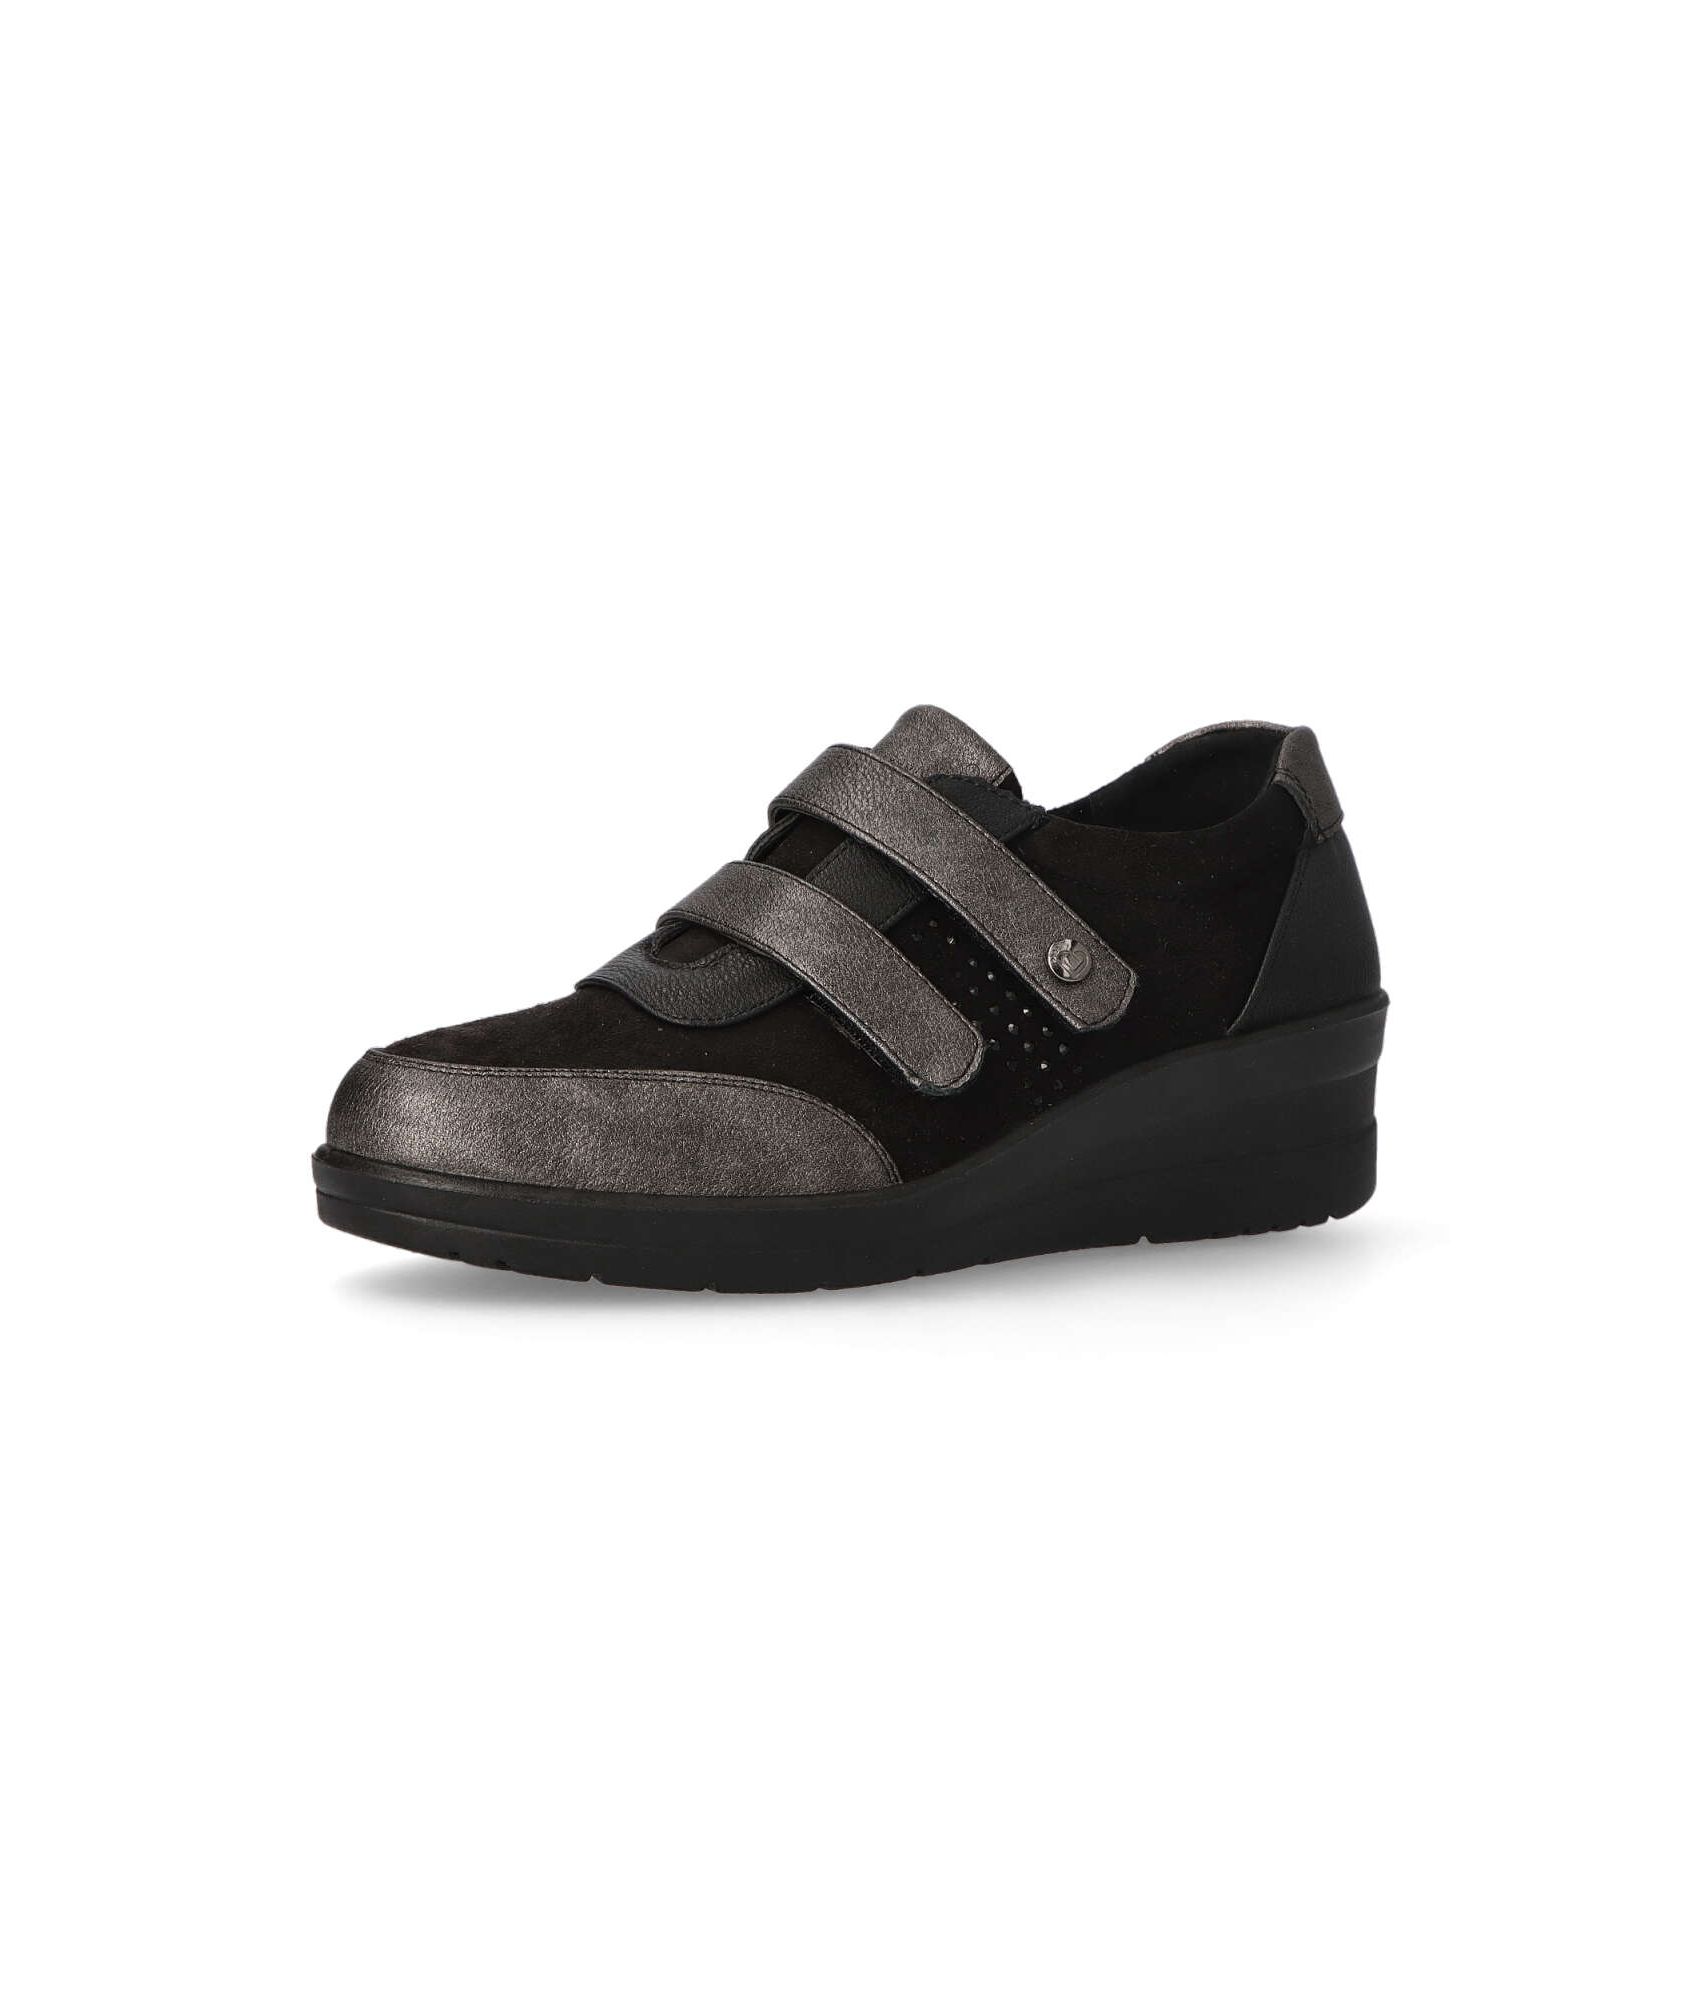 Sneakers Amarpies Velcro Mujer | Comprar Deportivos Amarpies Online